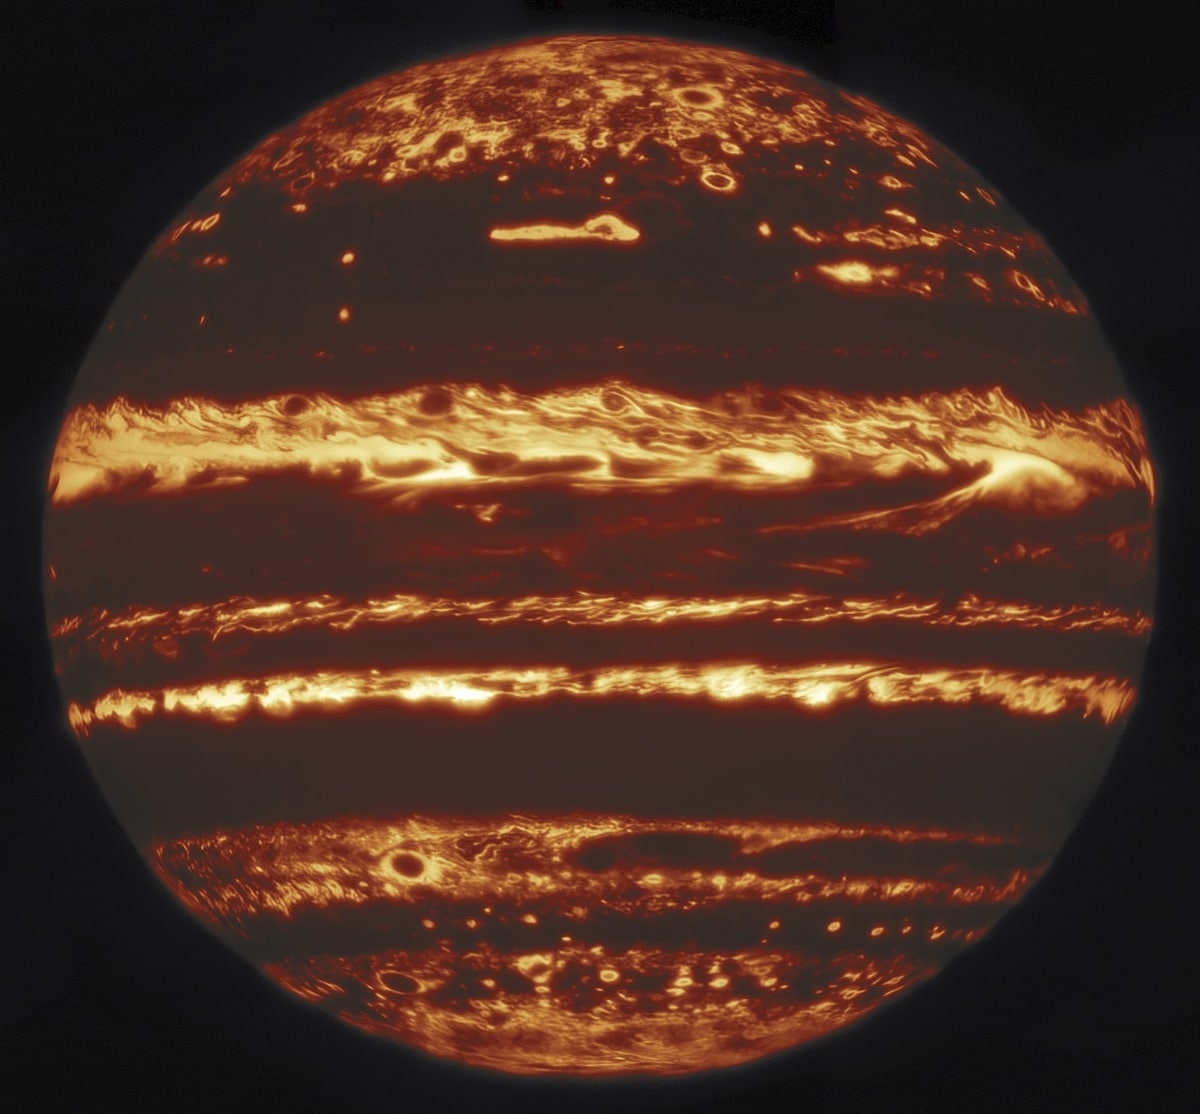 Júpiter en infrarrojo